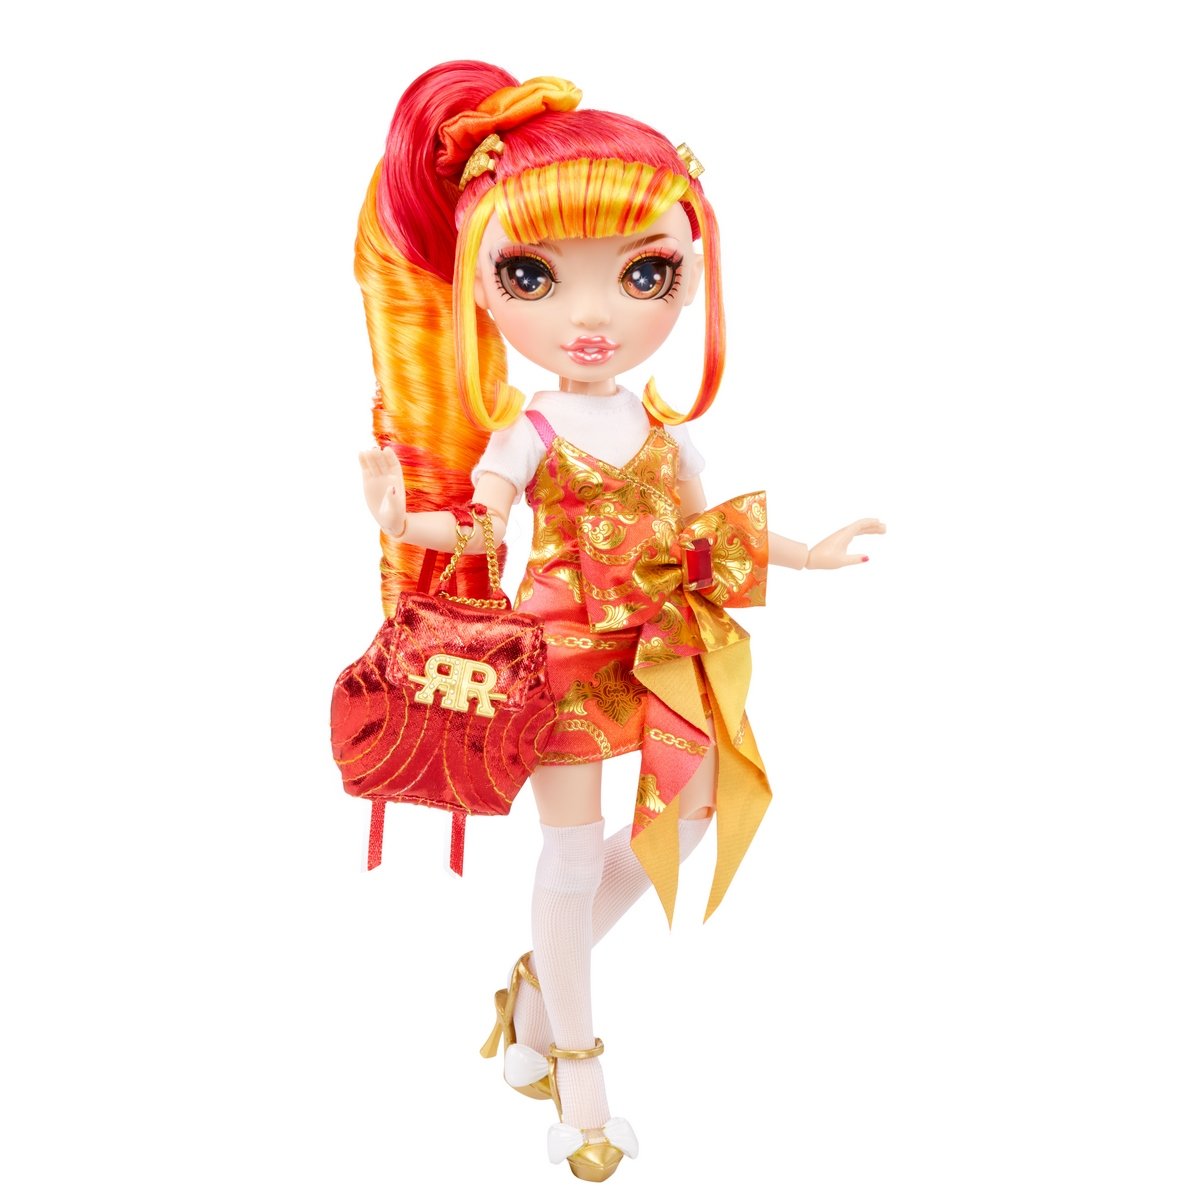 Rainbow High poupée junior Laurel De'Vious orange - La Grande Récré